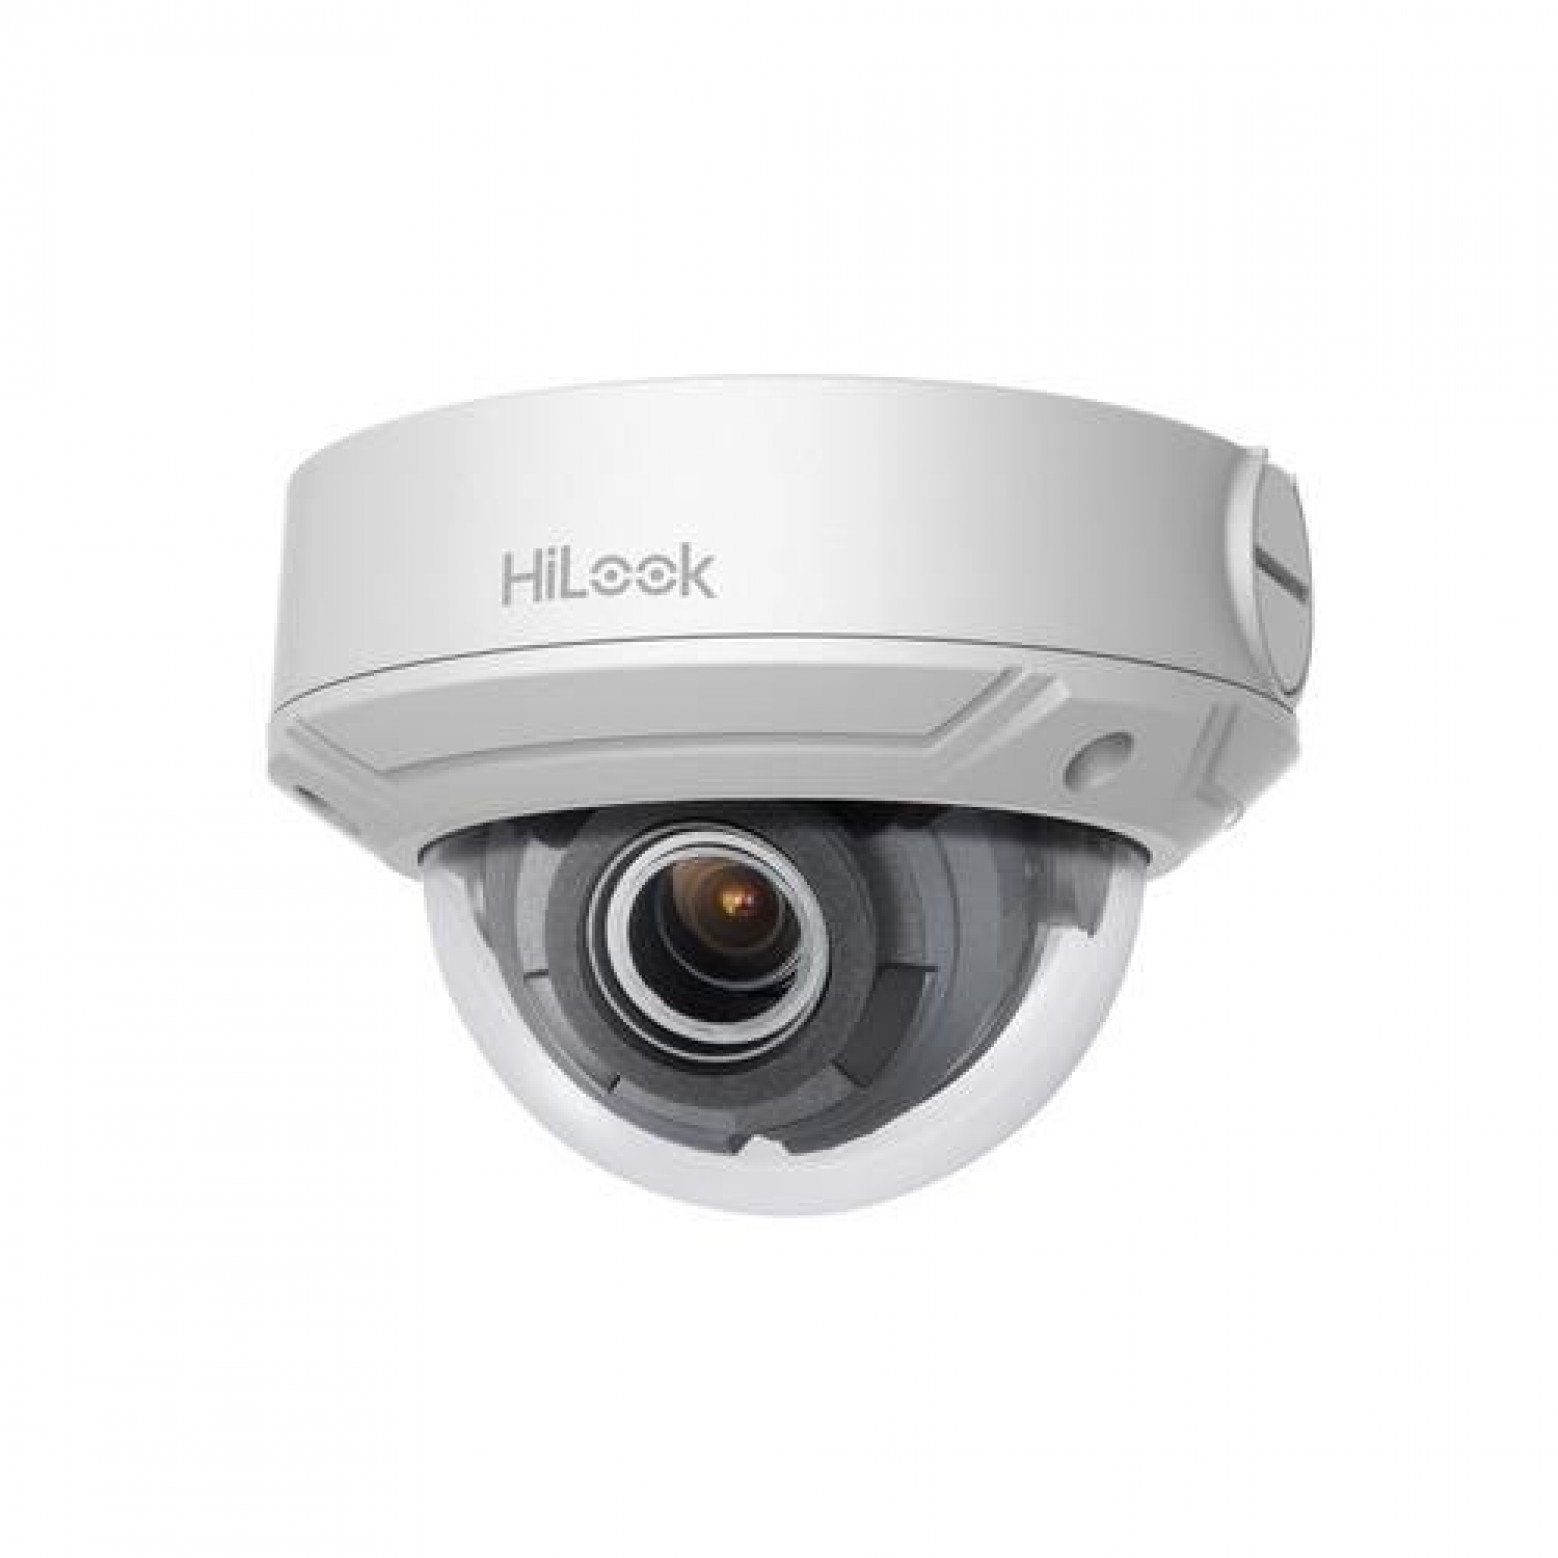 HiLook IPC-D620H-Z Varifocal 2.8 - 12mm 2 megapixel dome camera